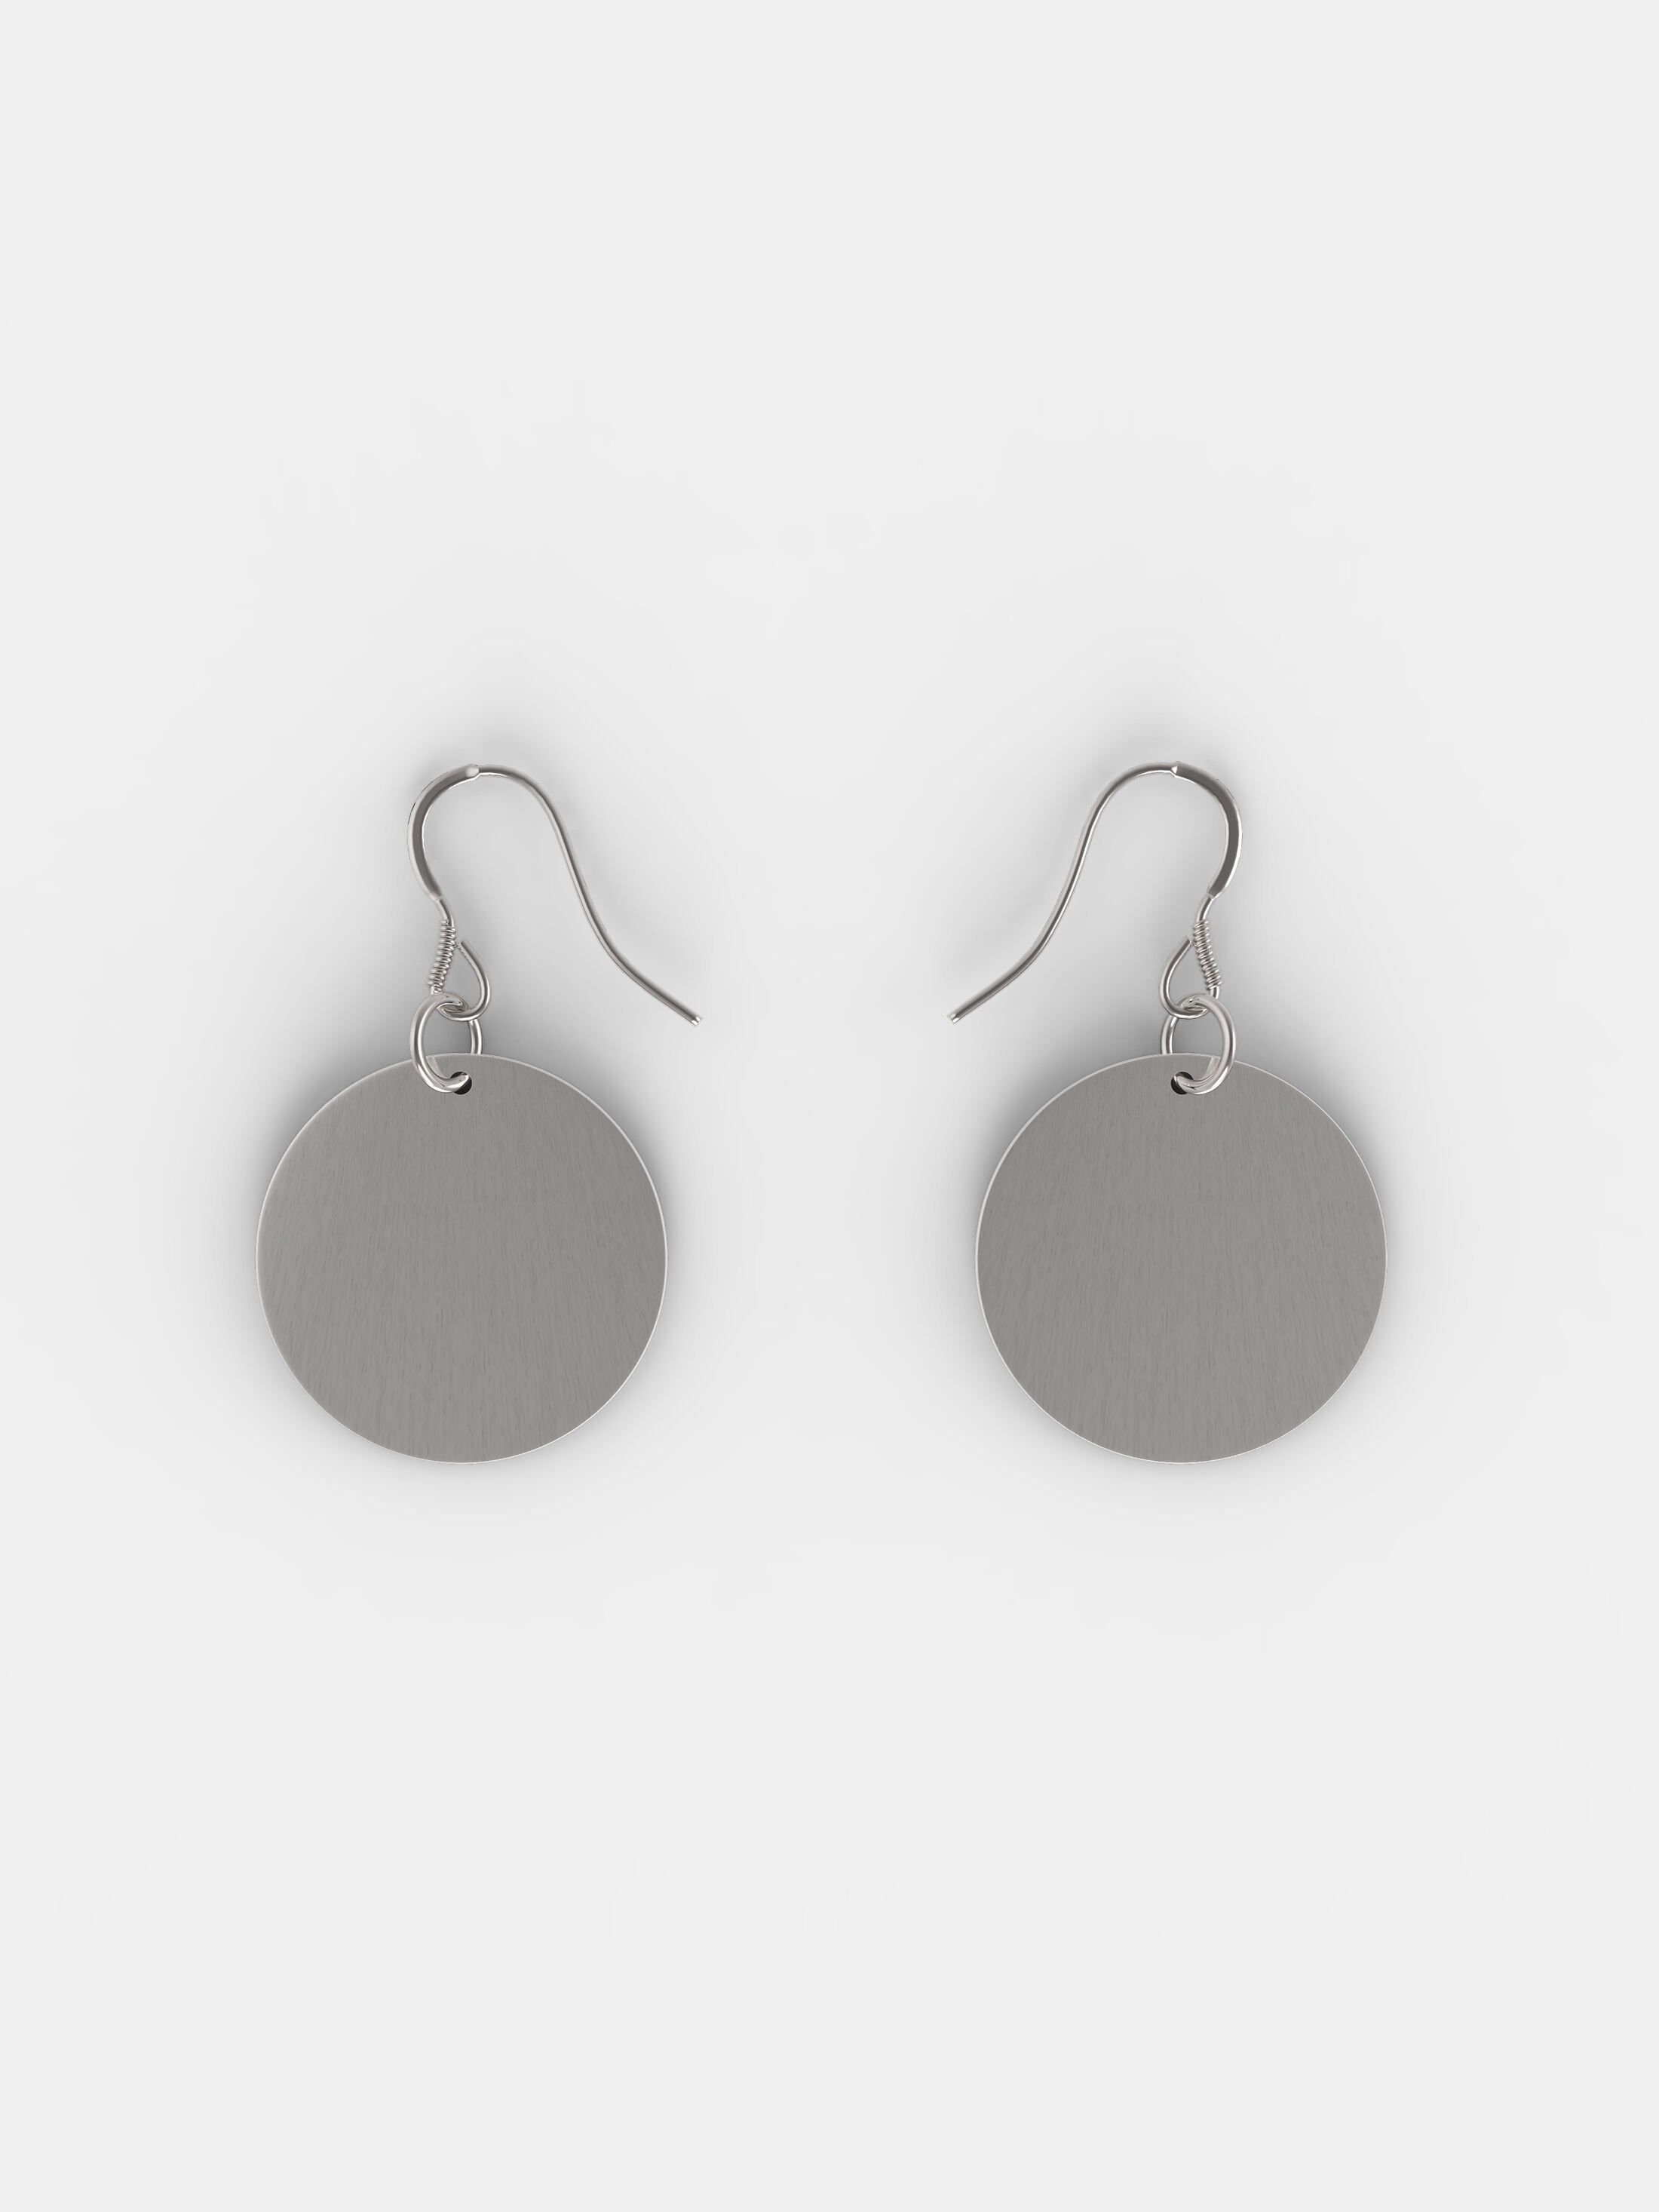 custom sterling silver earrings NZ